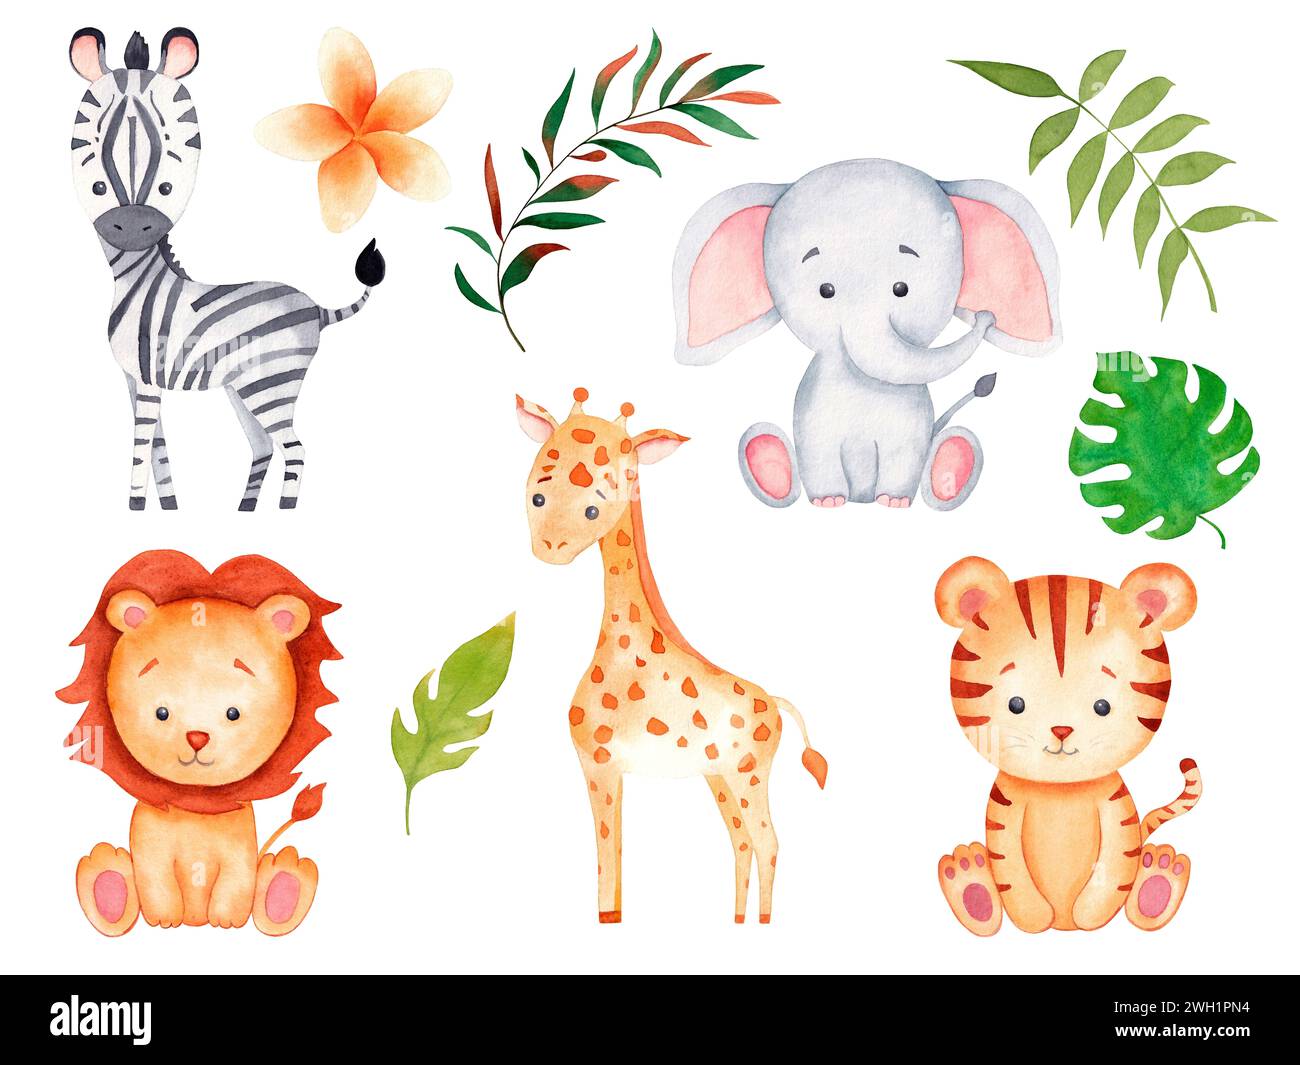 Illustration d'aquarelle d'animaux Safari avec bébé éléphant, lion, zèbre, girafe, tigre et feuillage de jungle tropicale pour pépinière, cartes postales, invitations Banque D'Images